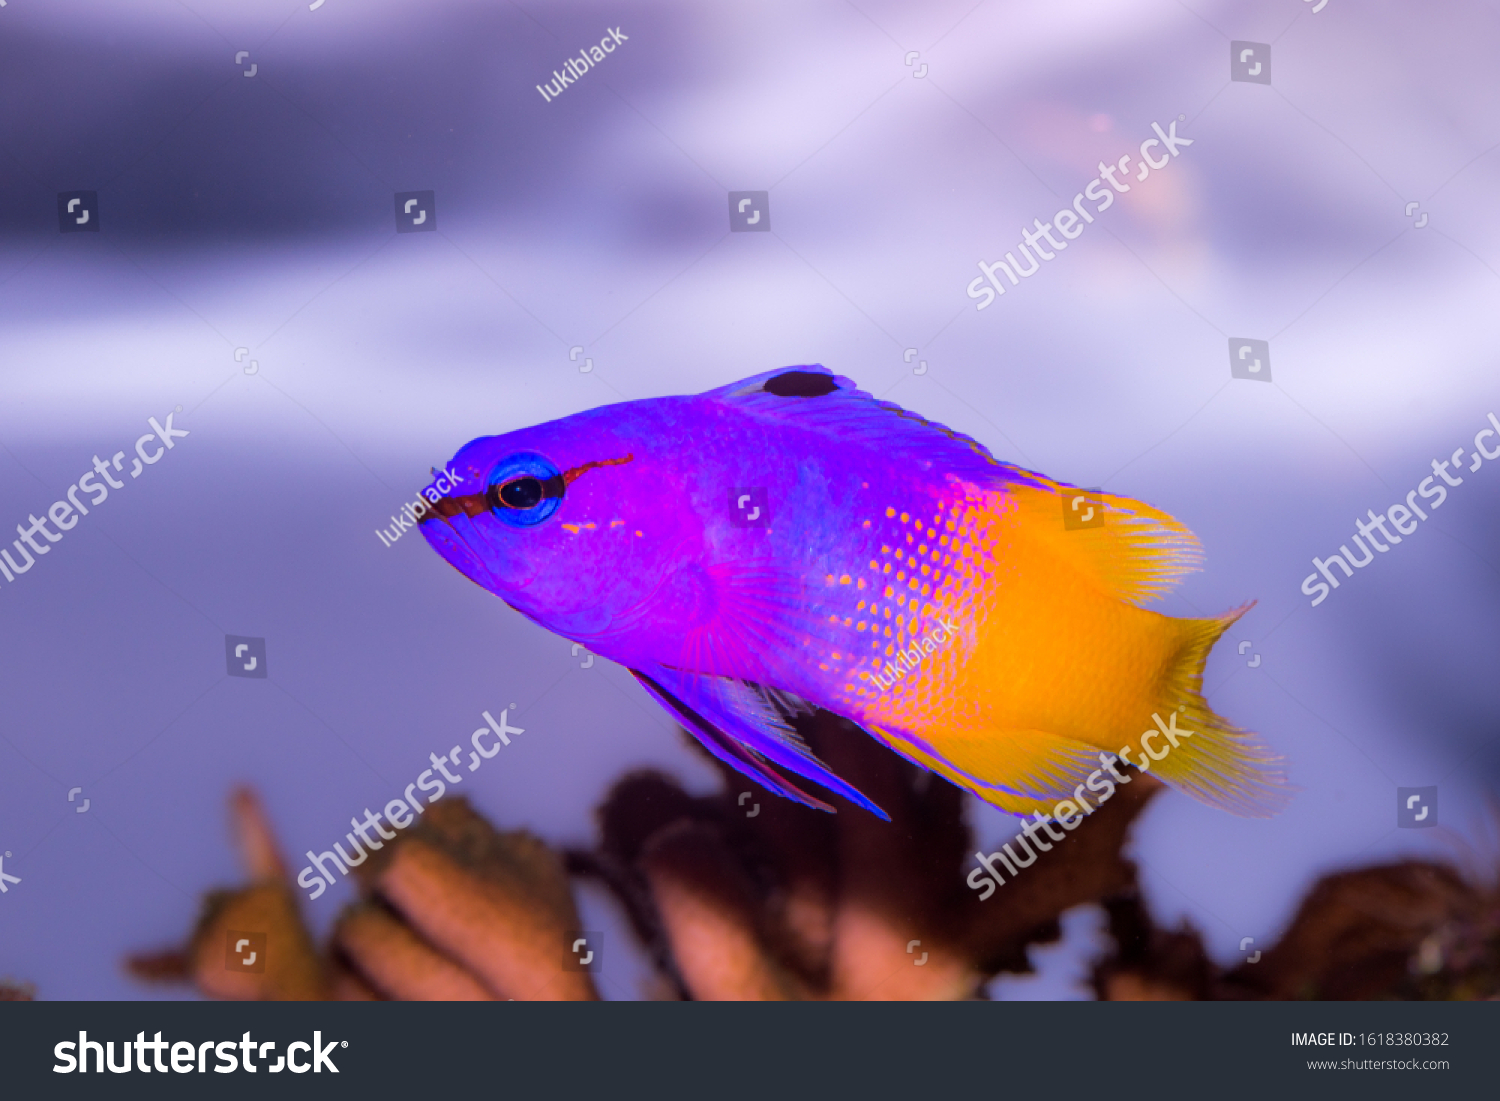 royal tropical fish